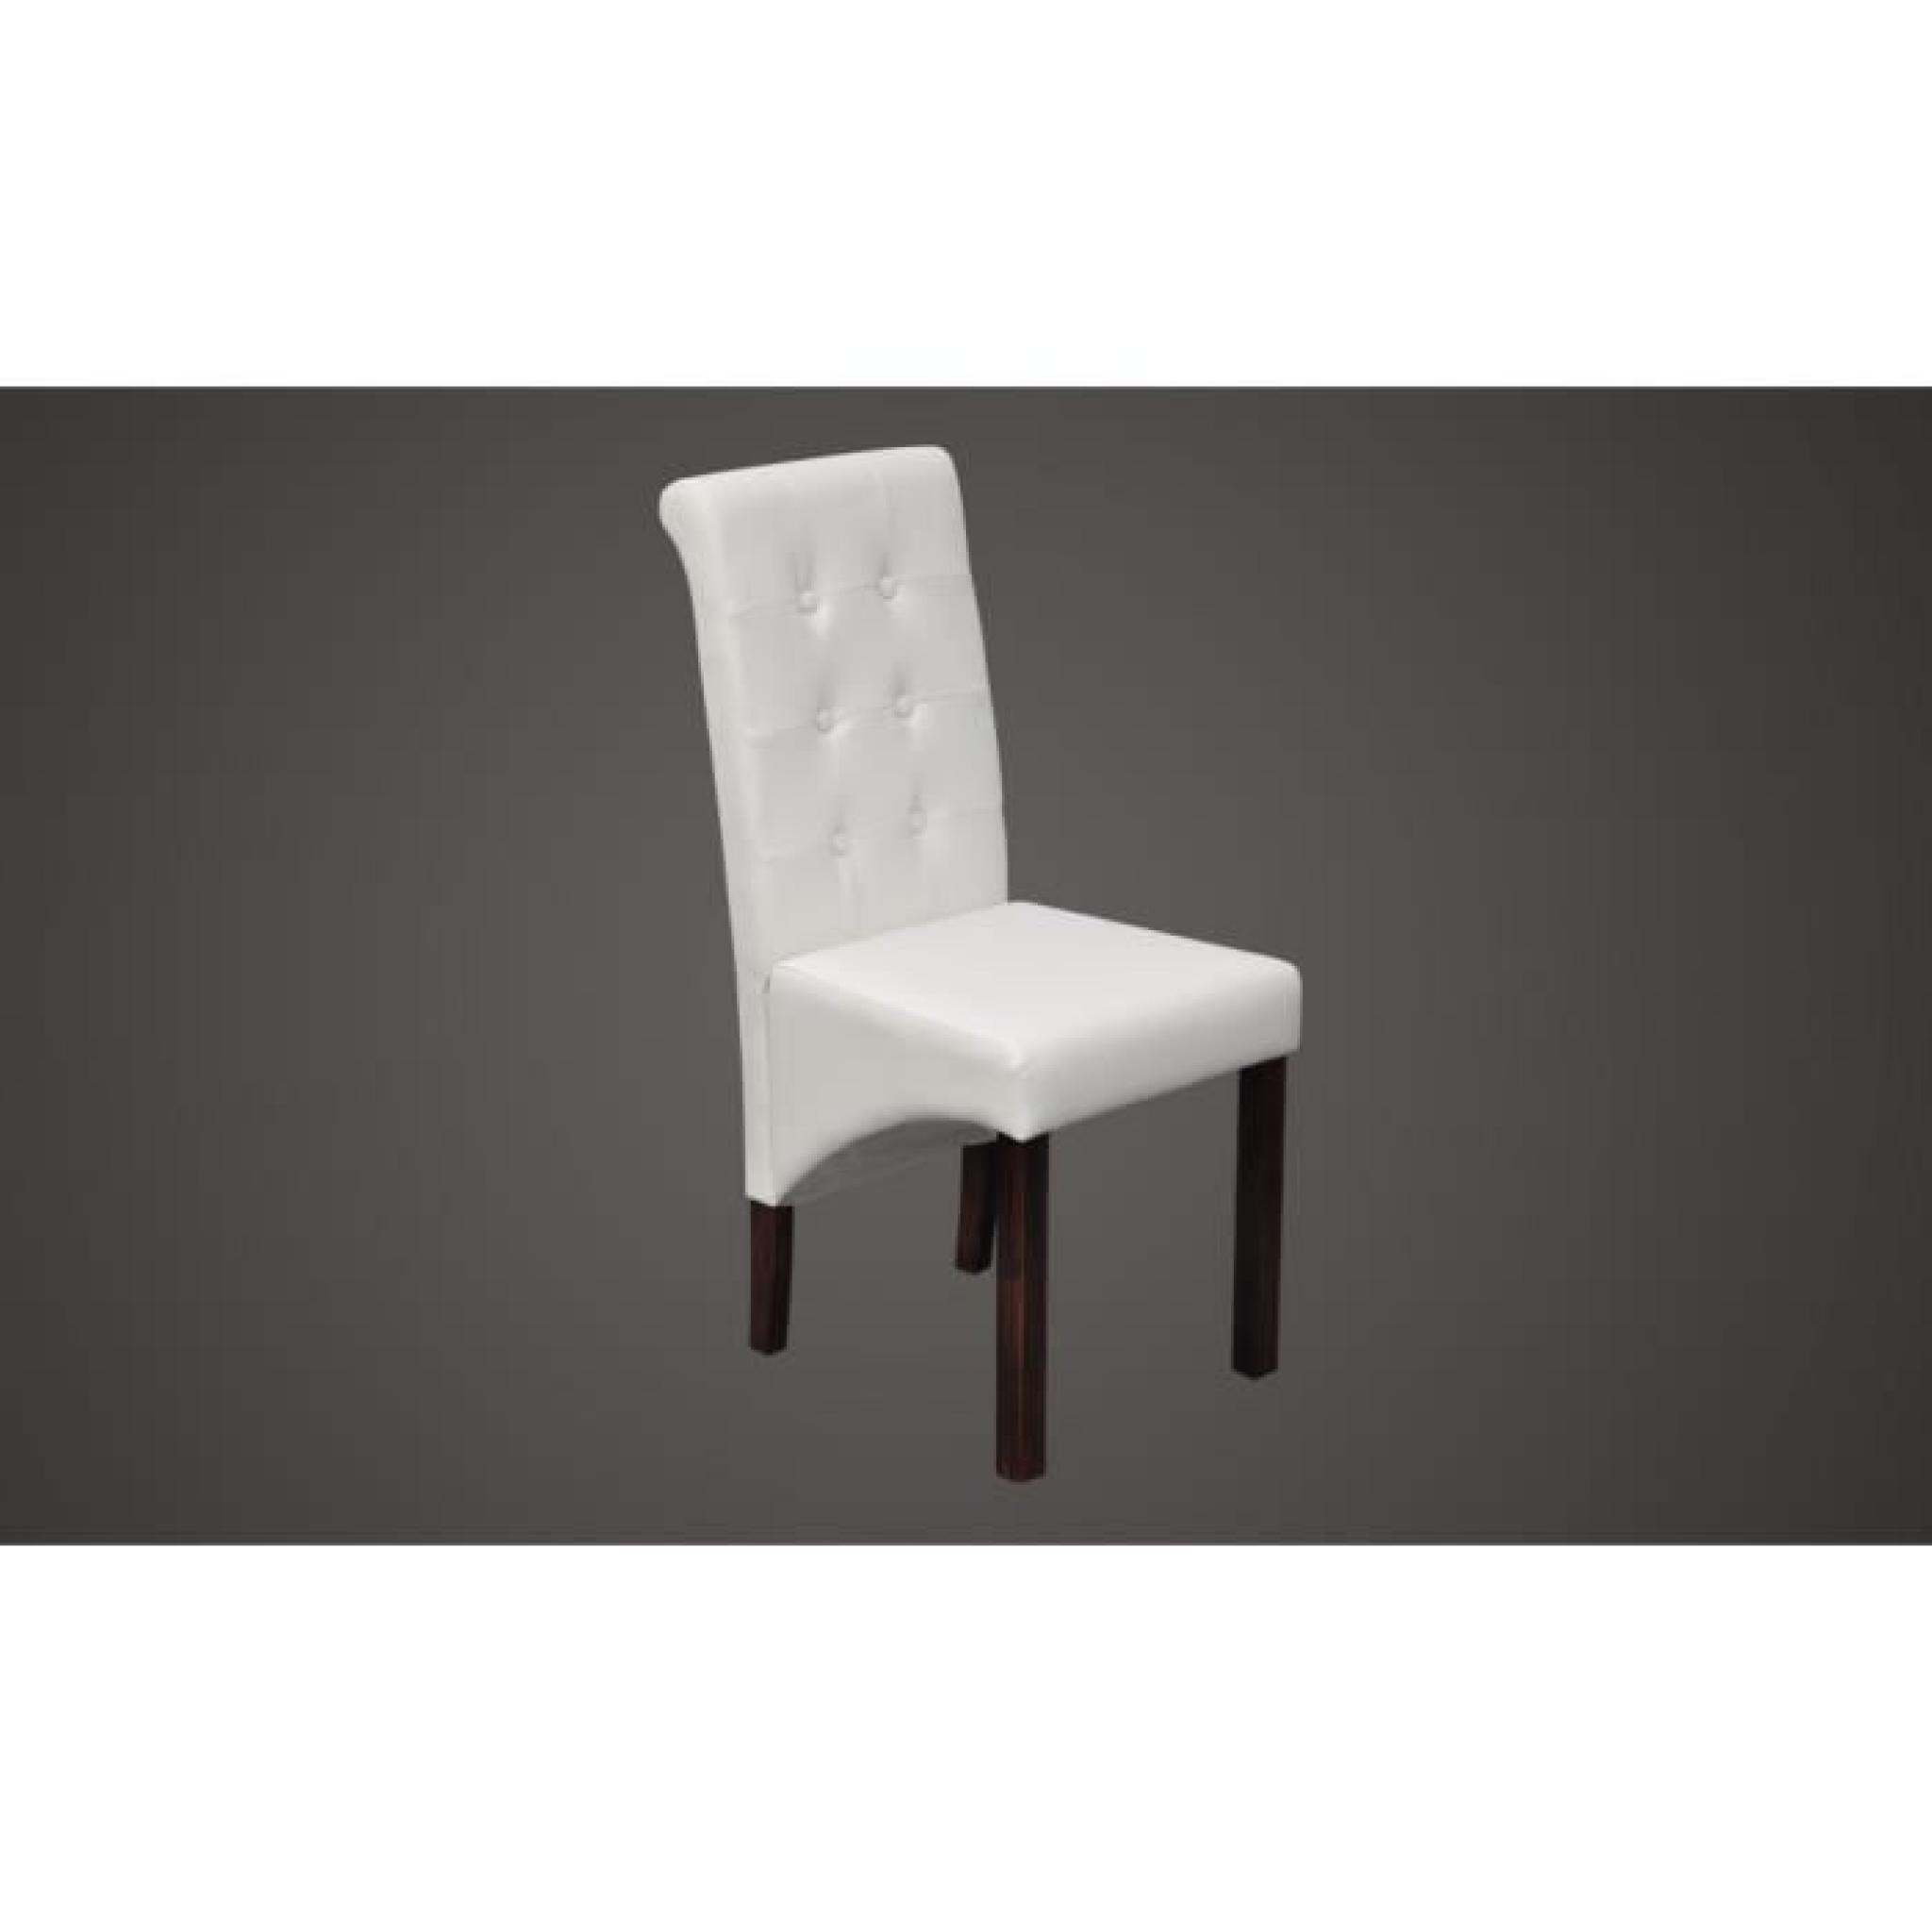 Chaise antique simili cuir blanc (lot de 4) pas cher